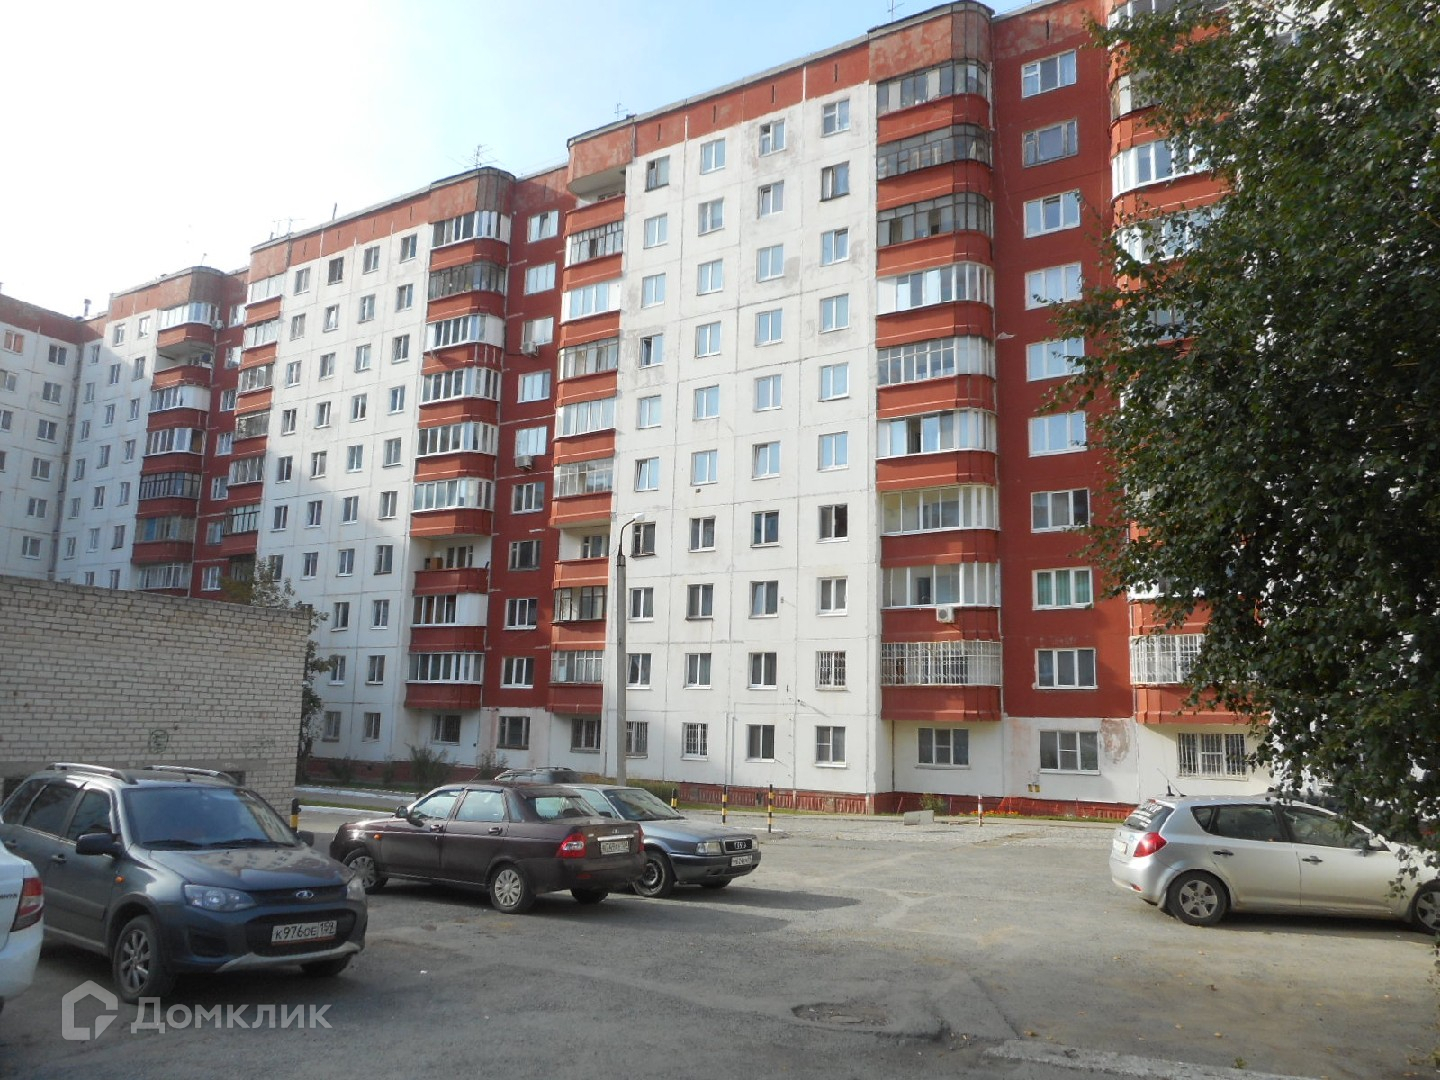  1-комнатную квартиру, 35.74 м² по адресу Пермь, улица Мира, 115 .